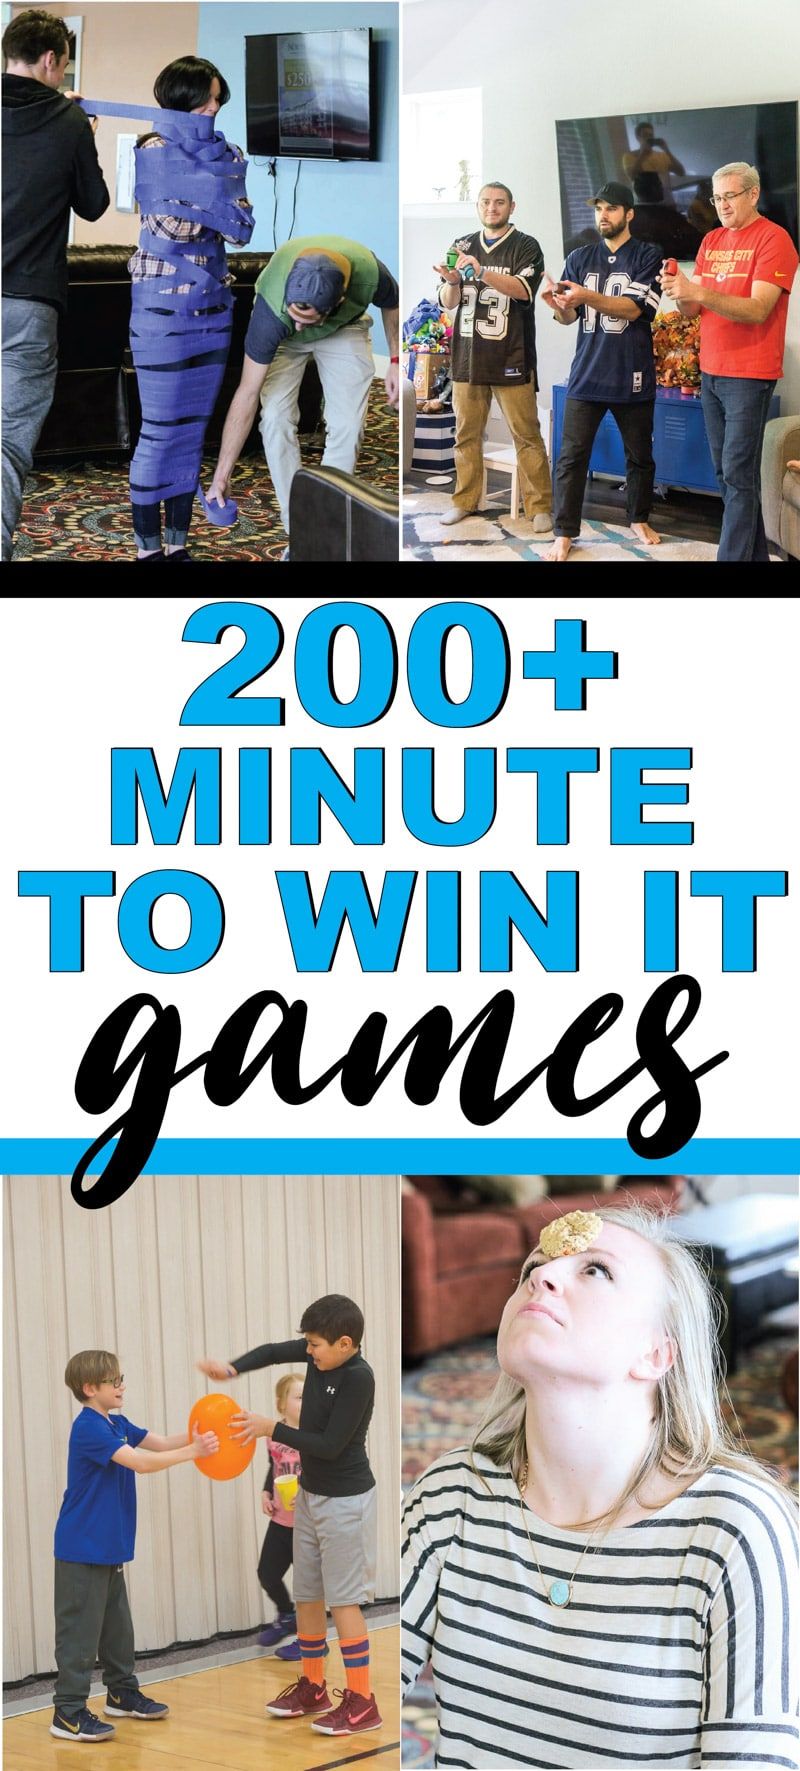 ¡El mejor minuto para ganar juegos para niños, adolescentes o incluso adultos! ¡Más de 200 juegos divertidos que son perfectos para una reunión familiar, para la escuela, para fiestas escolares y más! ¡Juegos fáciles, divertidos juegos de equipo y más!